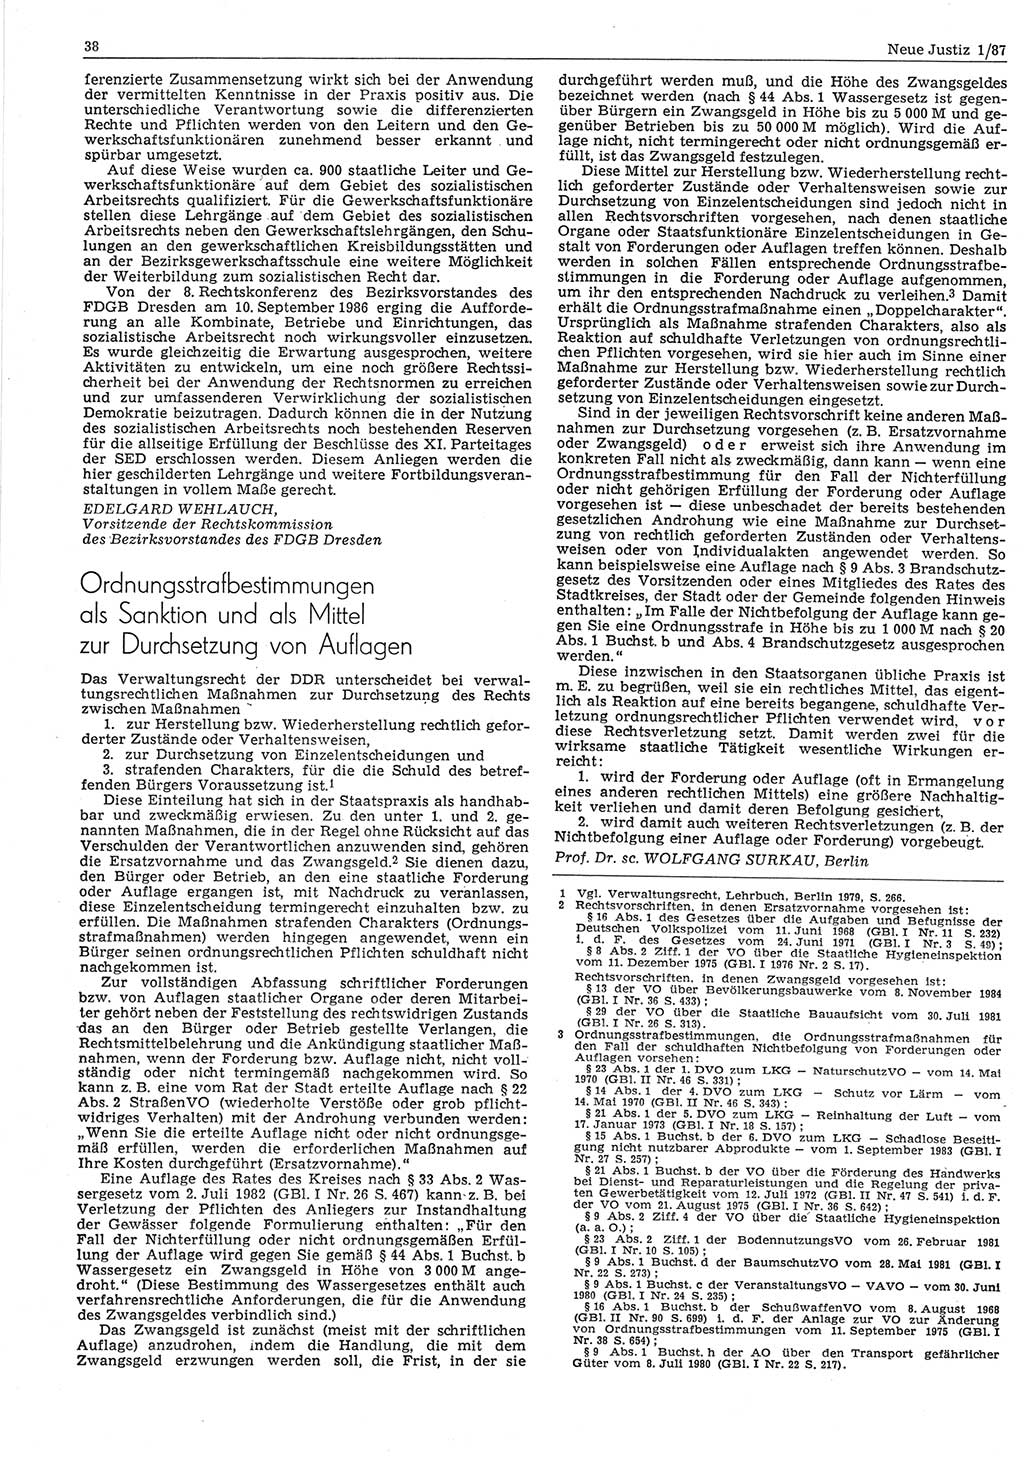 Neue Justiz (NJ), Zeitschrift für sozialistisches Recht und Gesetzlichkeit [Deutsche Demokratische Republik (DDR)], 41. Jahrgang 1987, Seite 38 (NJ DDR 1987, S. 38)